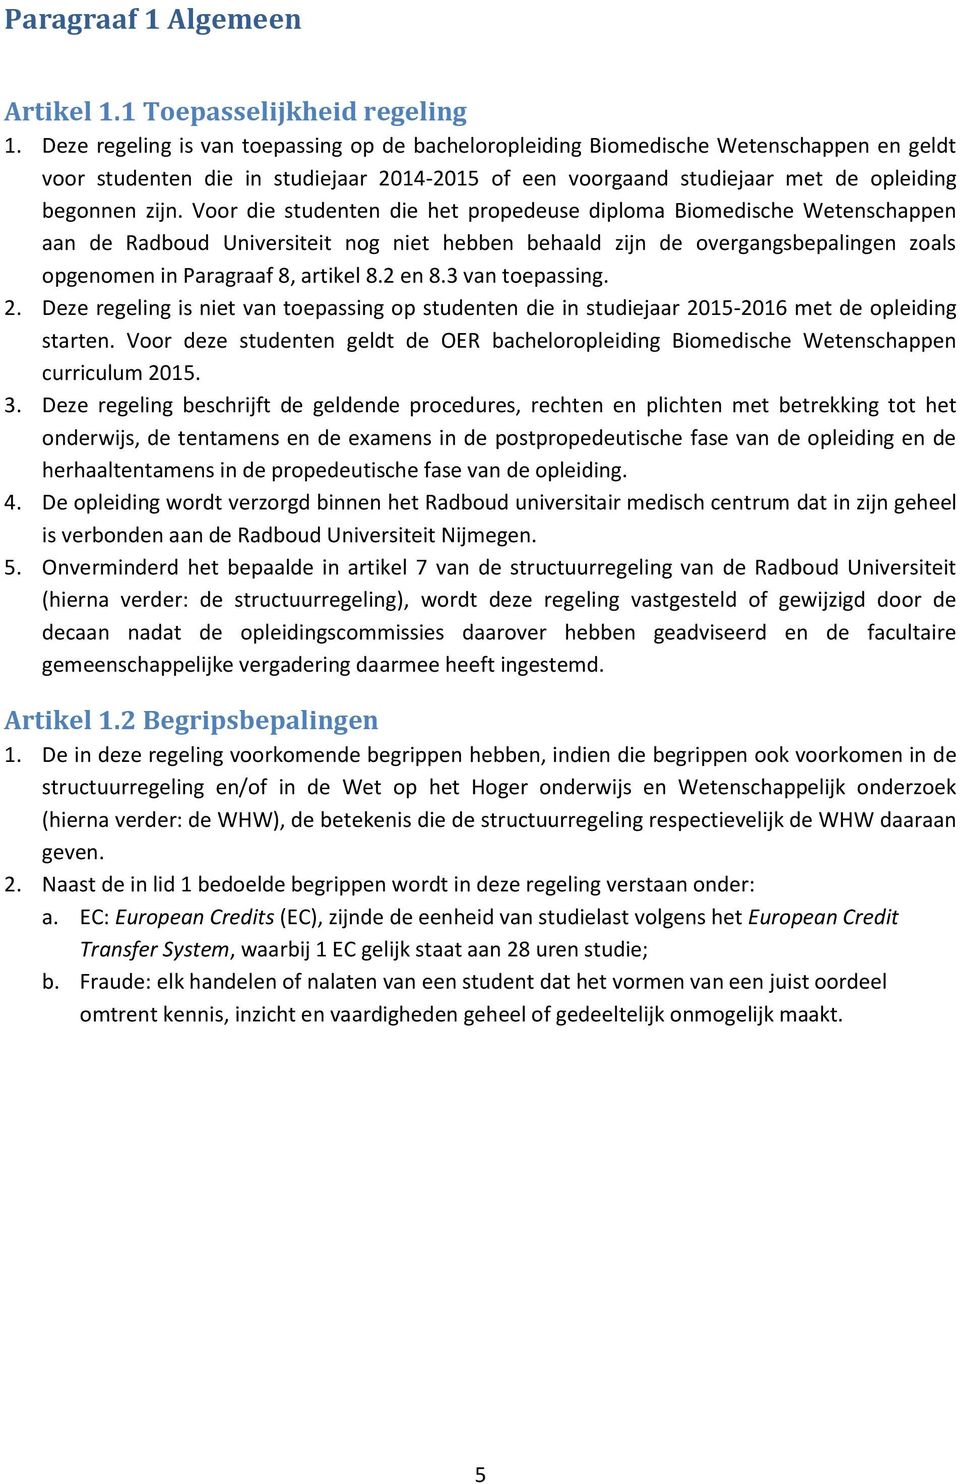 Voor die studenten die het propedeuse diploma Biomedische Wetenschappen aan de Radboud Universiteit nog niet hebben behaald zijn de overgangsbepalingen zoals opgenomen in Paragraaf 8, artikel 8.